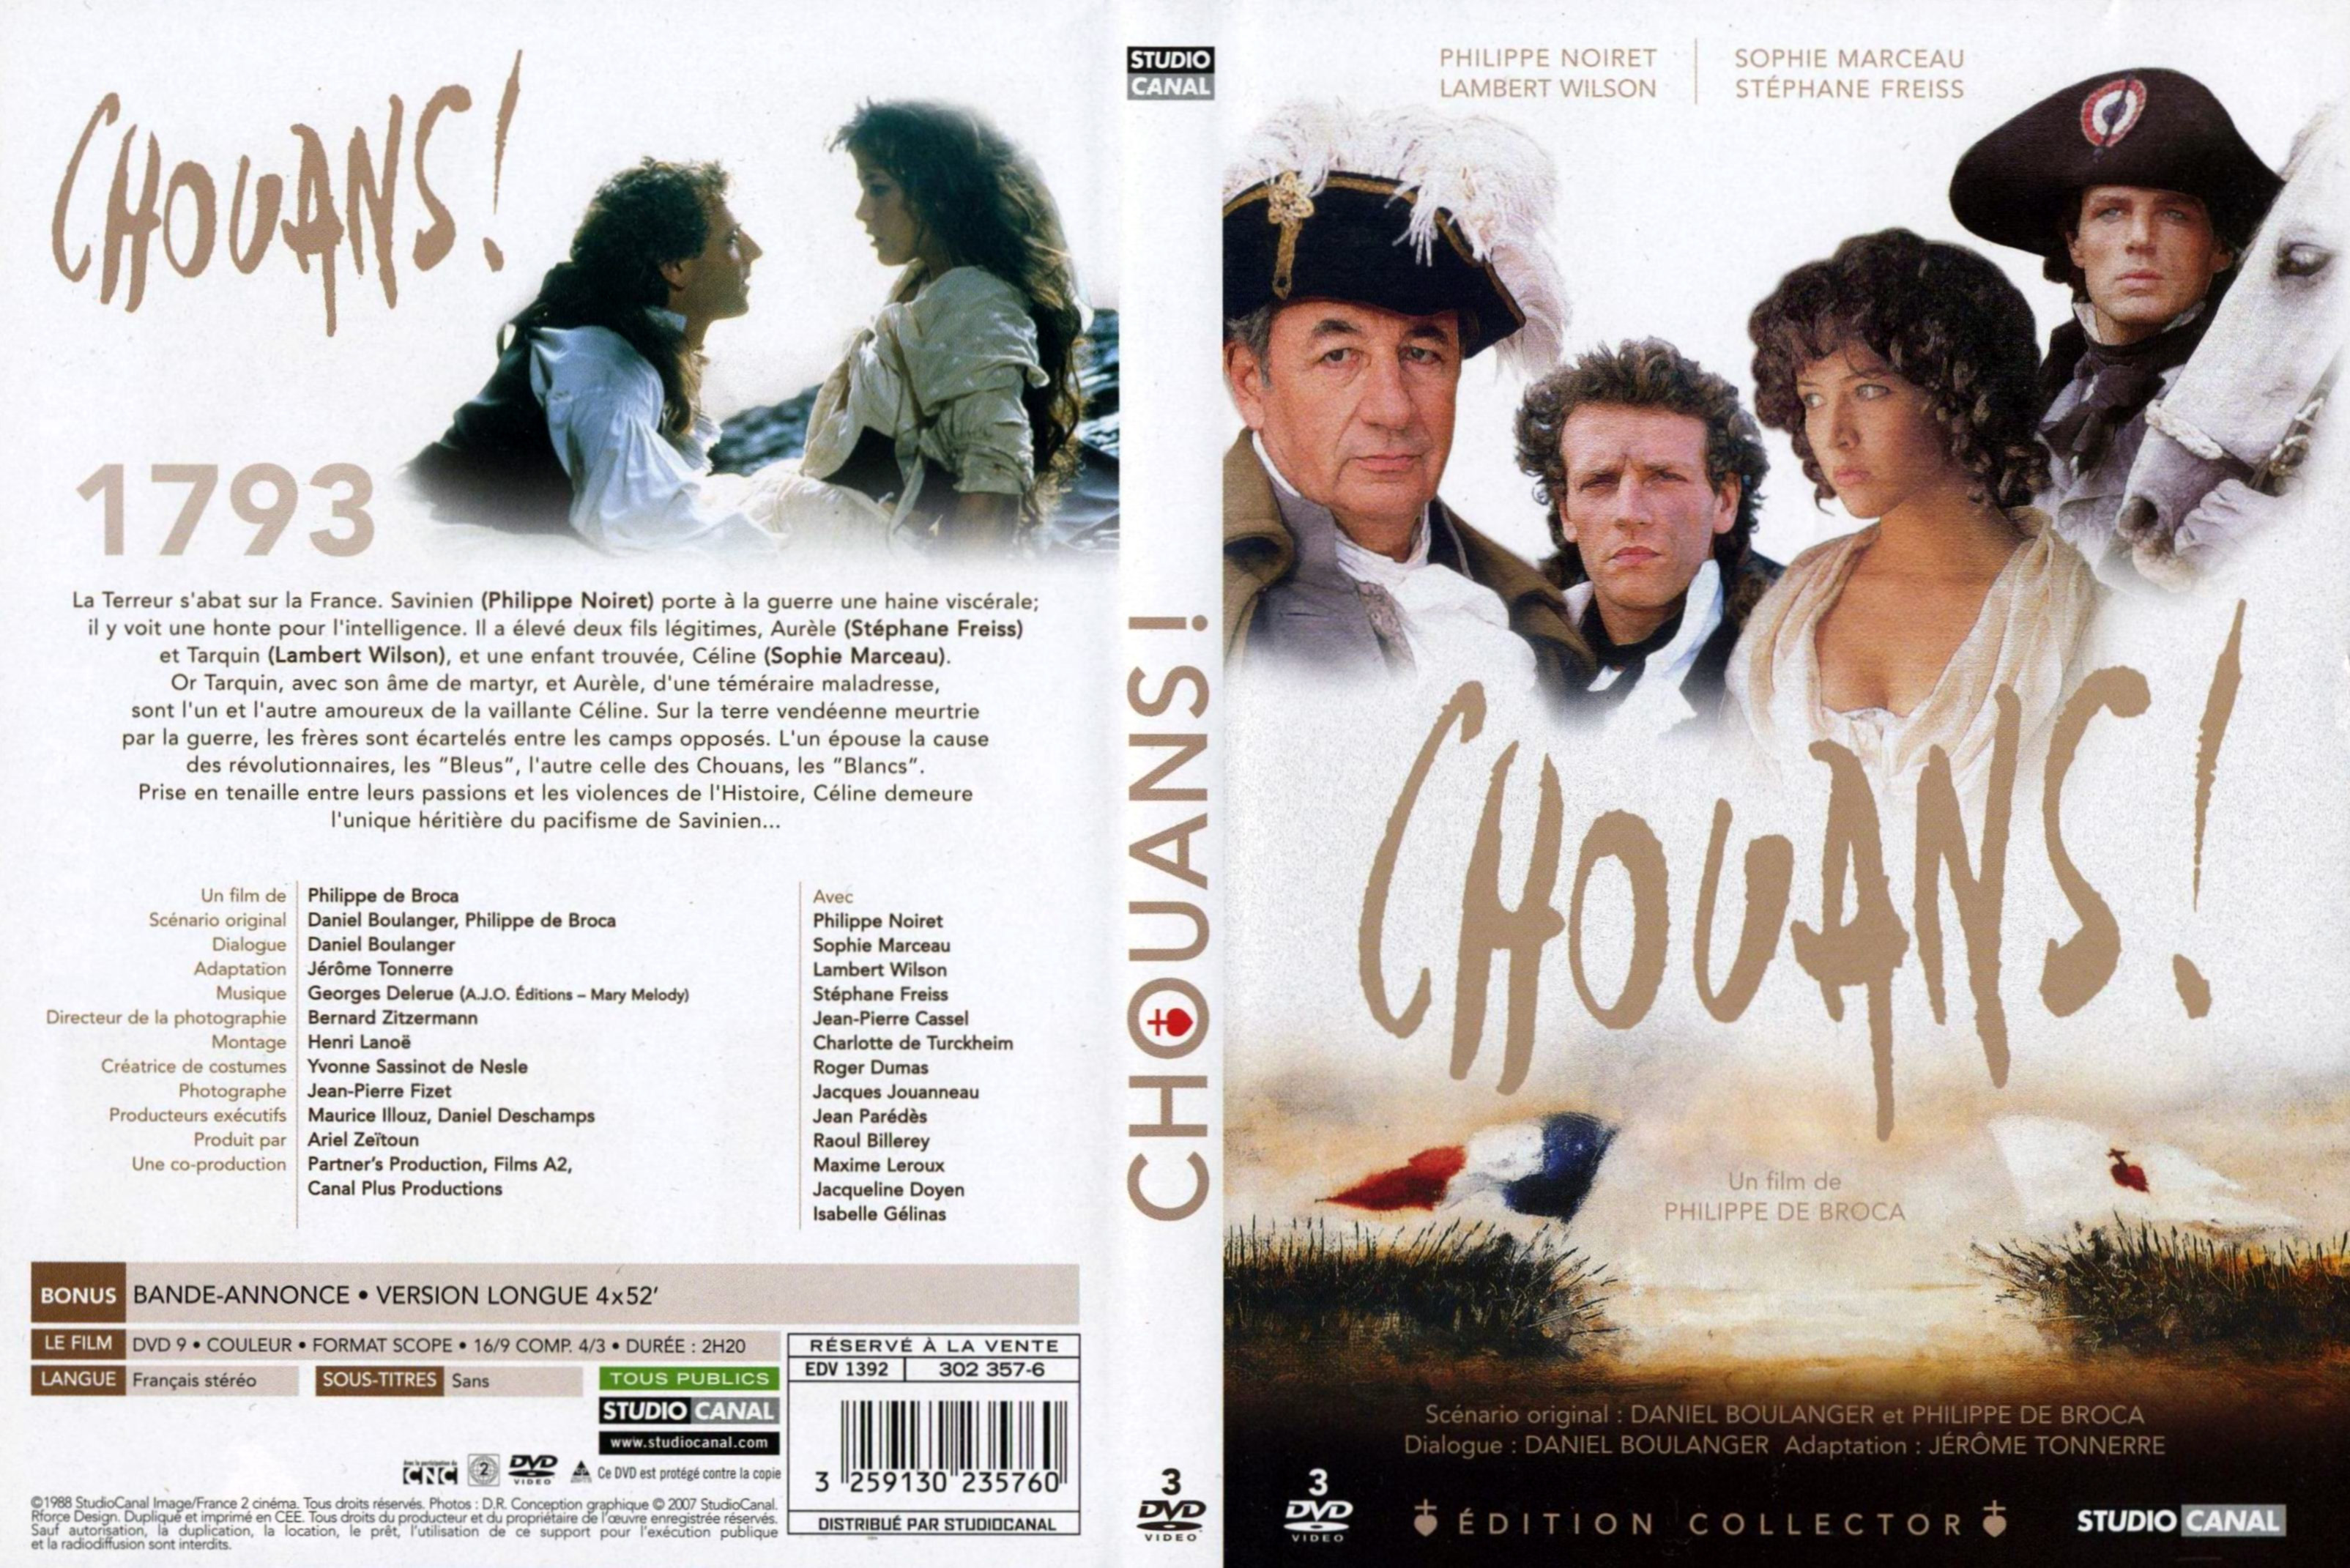 Jaquette DVD Chouans